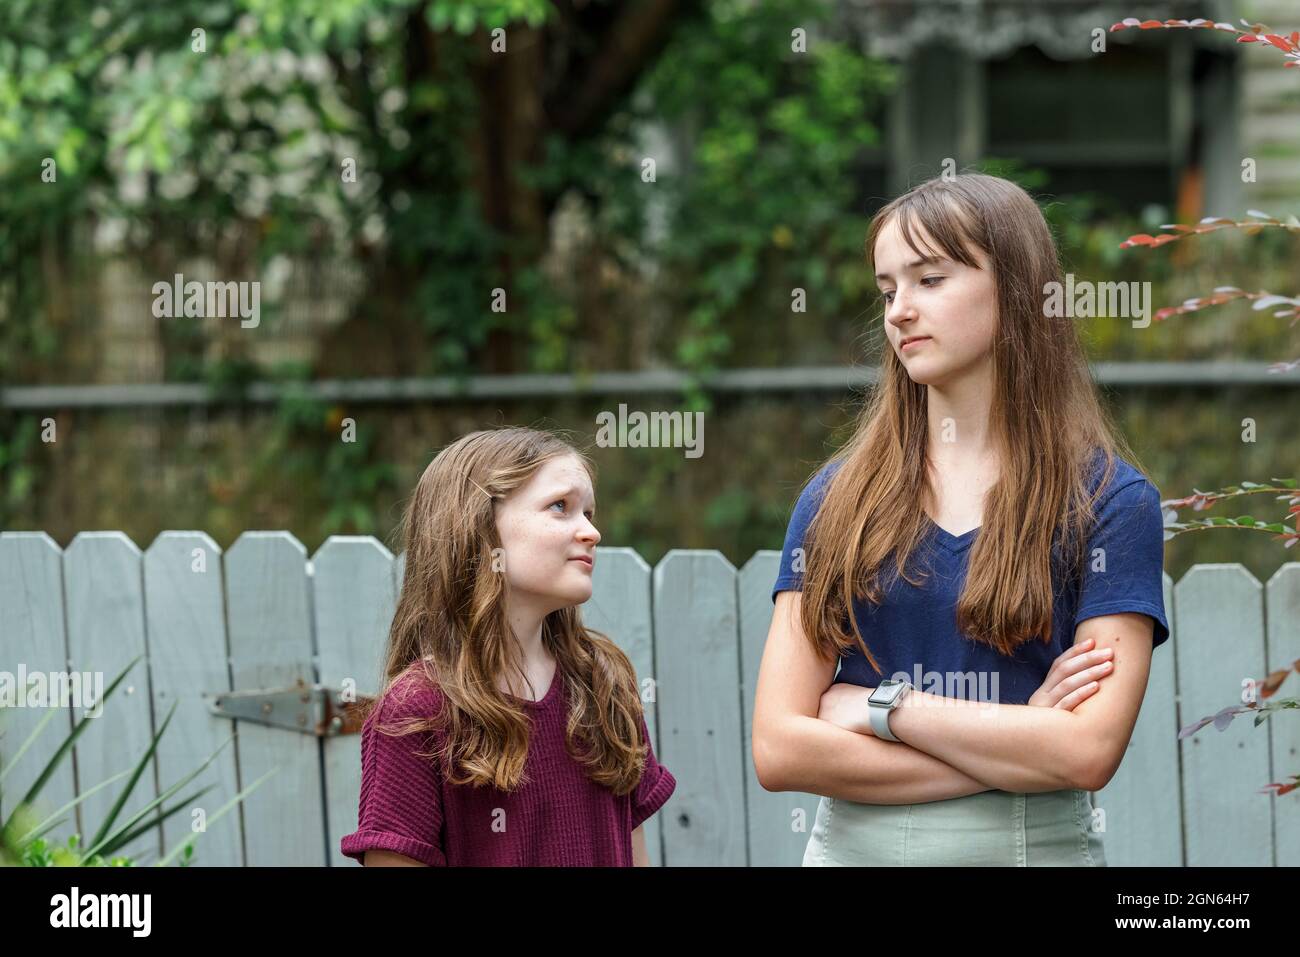 Zwei Schwestern und eine davon ist ein Teenager, der mit ihrer kleinen Schwester nicht glücklich ist Stockfoto